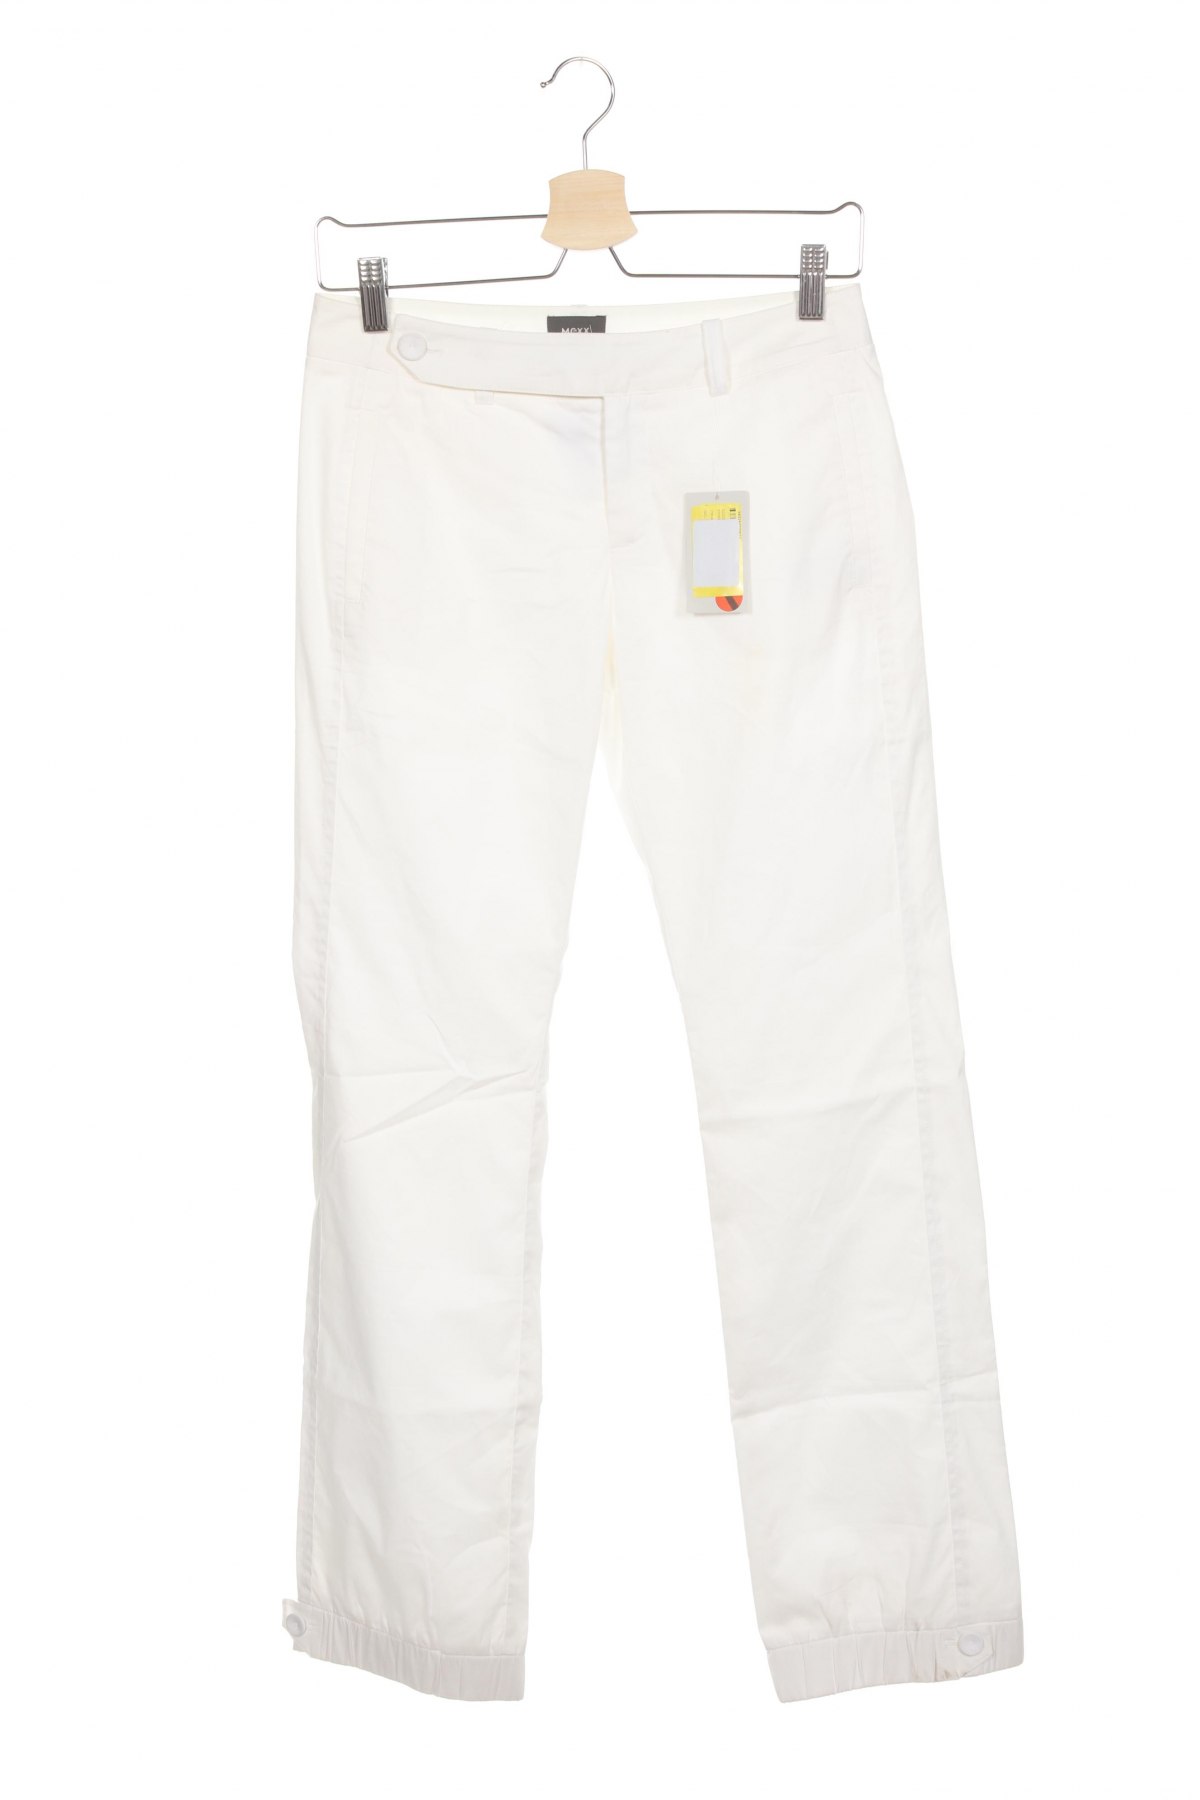 Γυναικείο παντελόνι Mexx, Μέγεθος XS, Χρώμα Λευκό, 81% βαμβάκι, 17% πολυαμίδη, 2% ελαστάνη, Τιμή 28,66 €